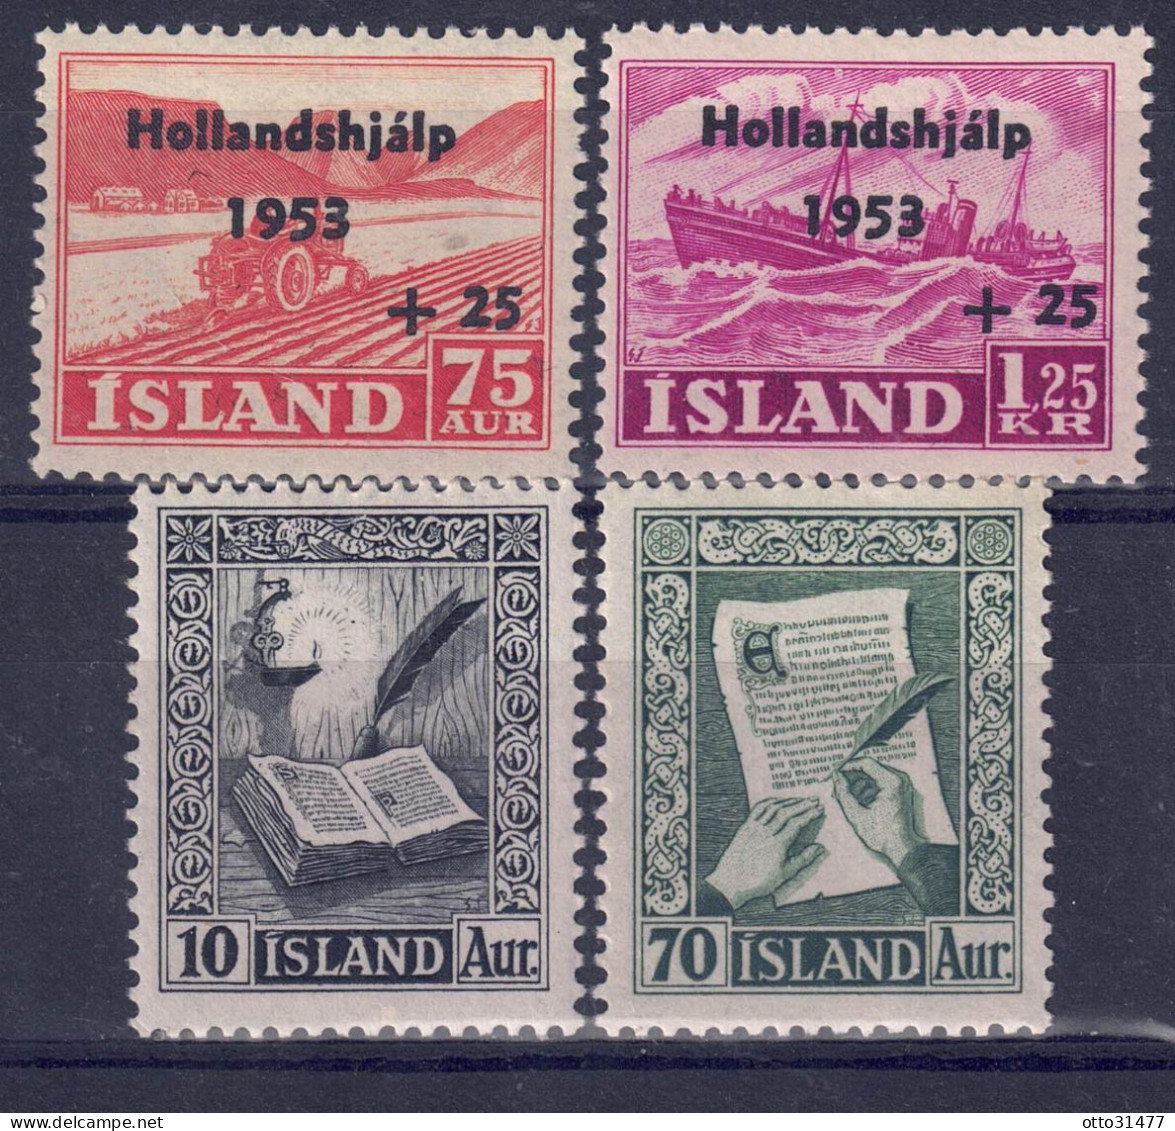 Island 1953 - Markenlot Aus Nr. 285 - 288, Postfrisch ** / MNH - Nuevos